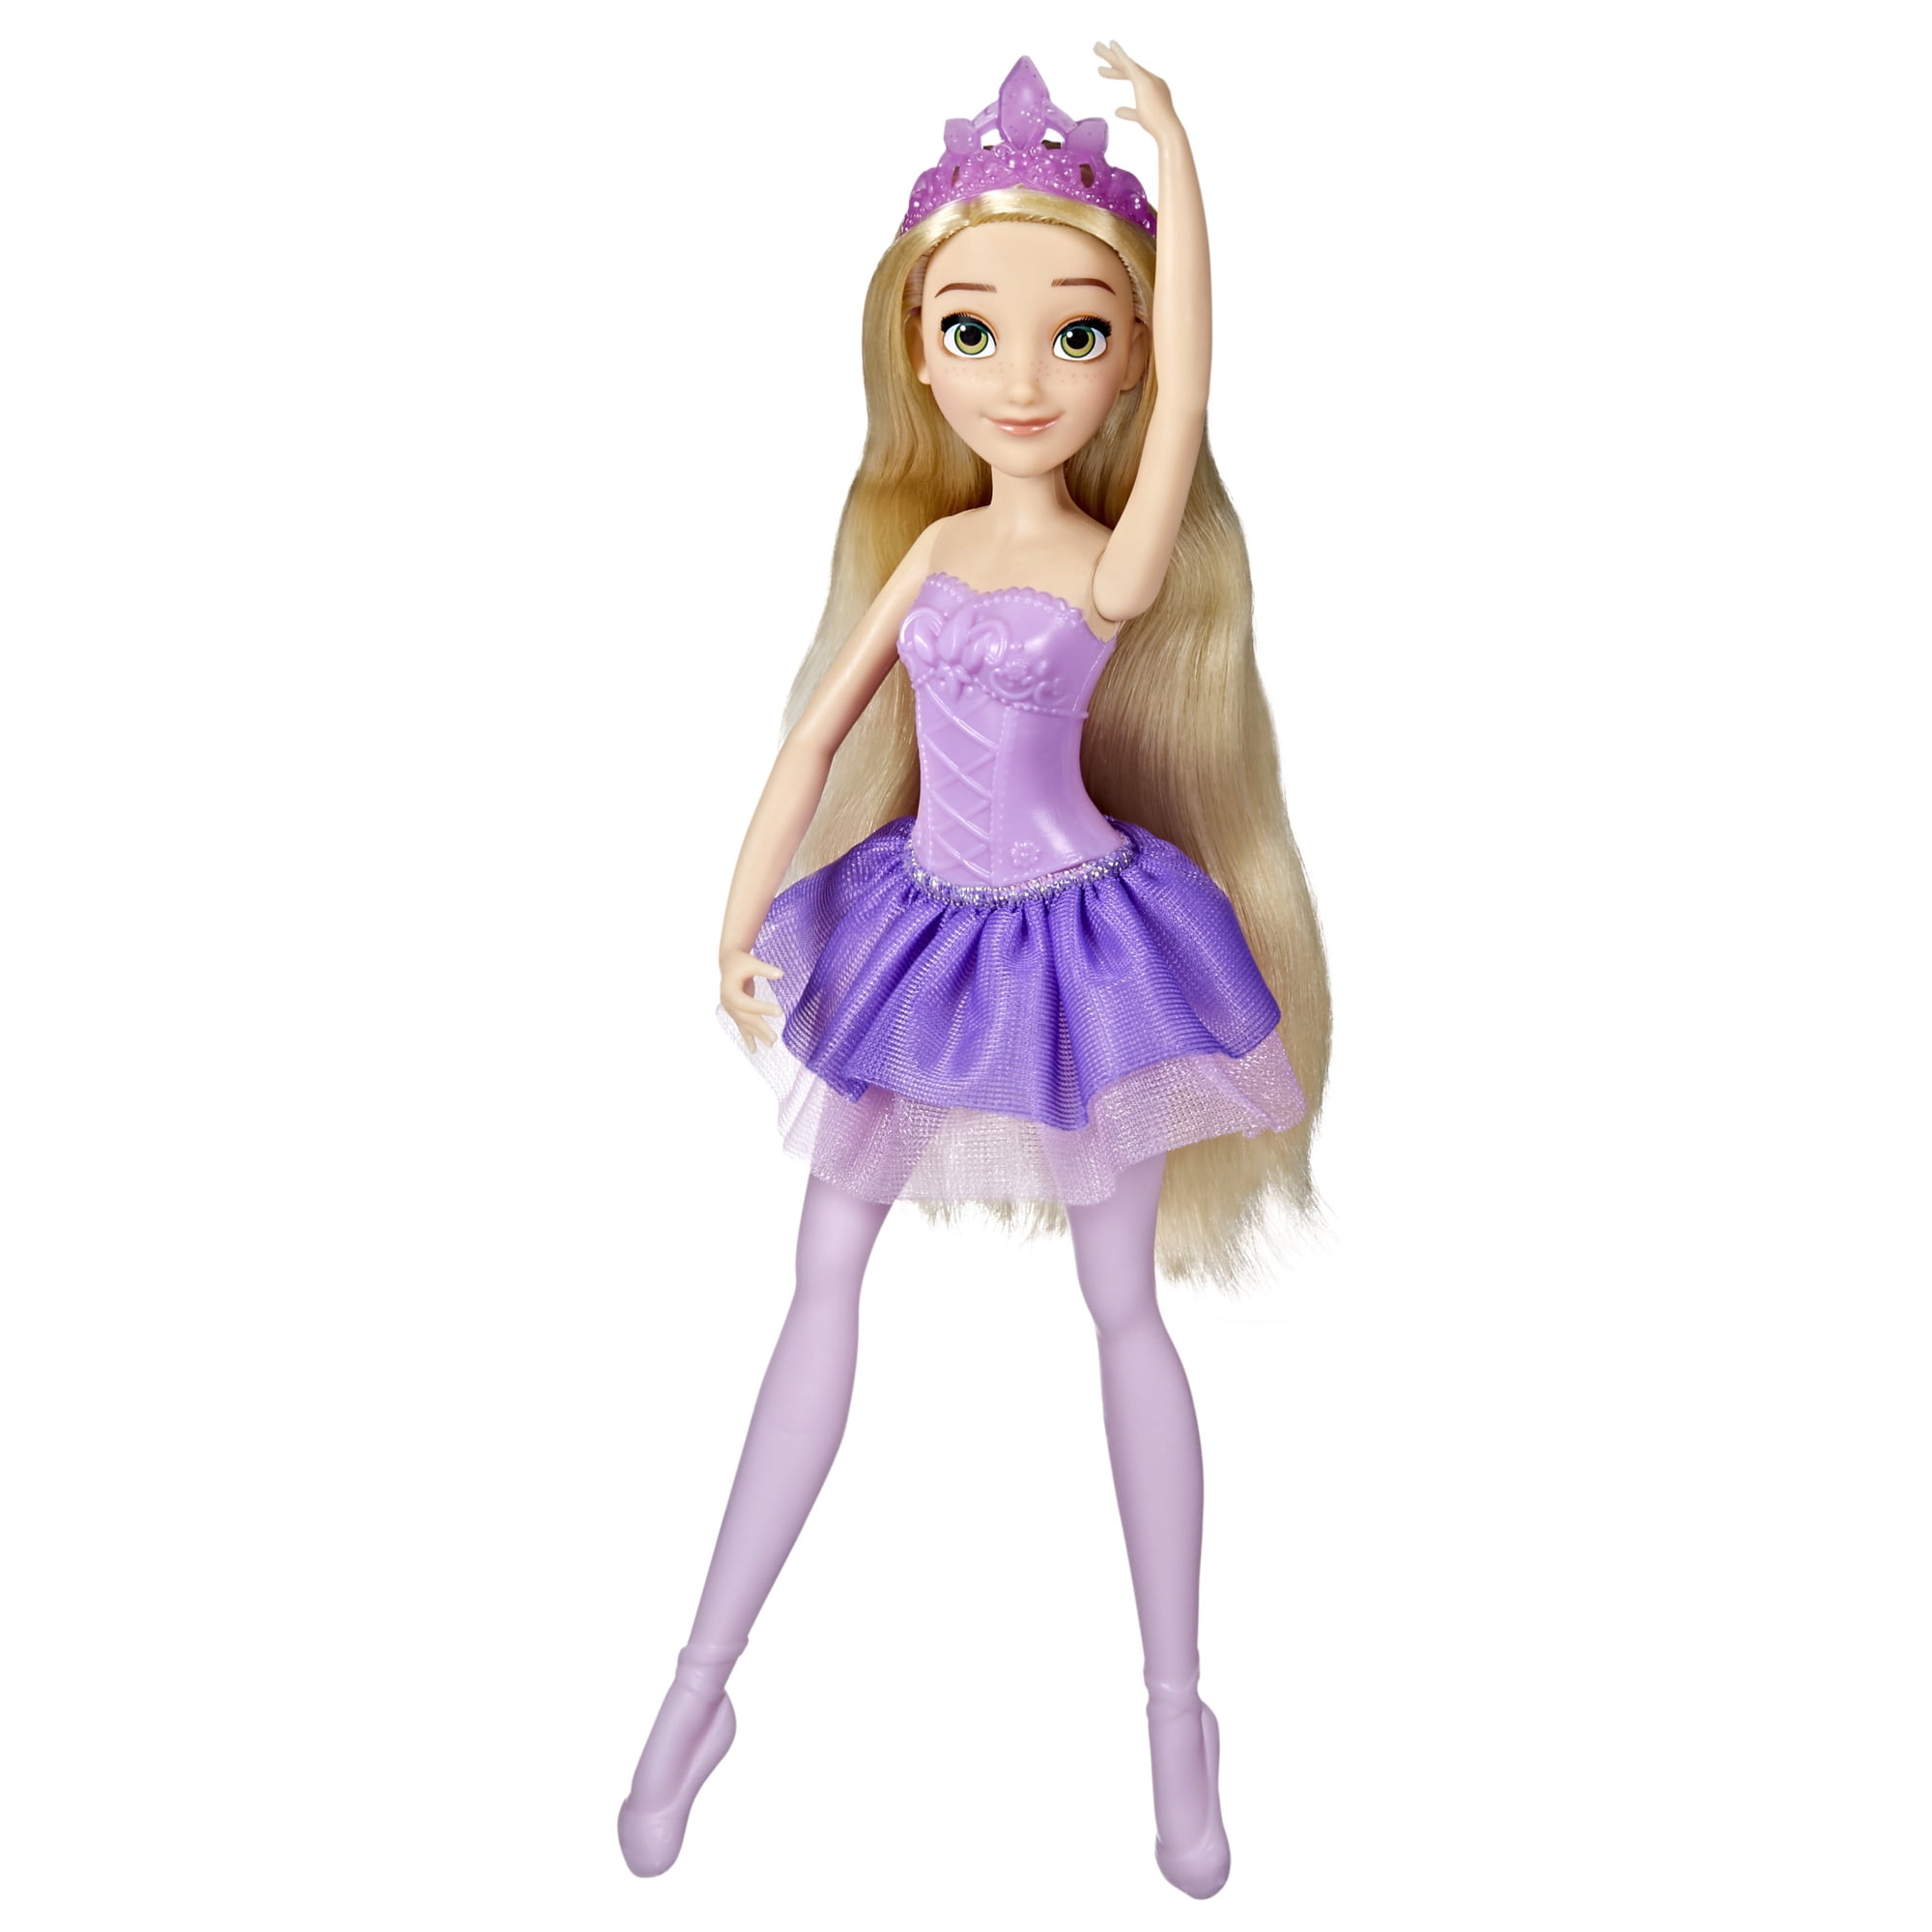 Disney Princess Ballerina Princess Rapunzel, Disney Princess Toy for Kids 3 and Up